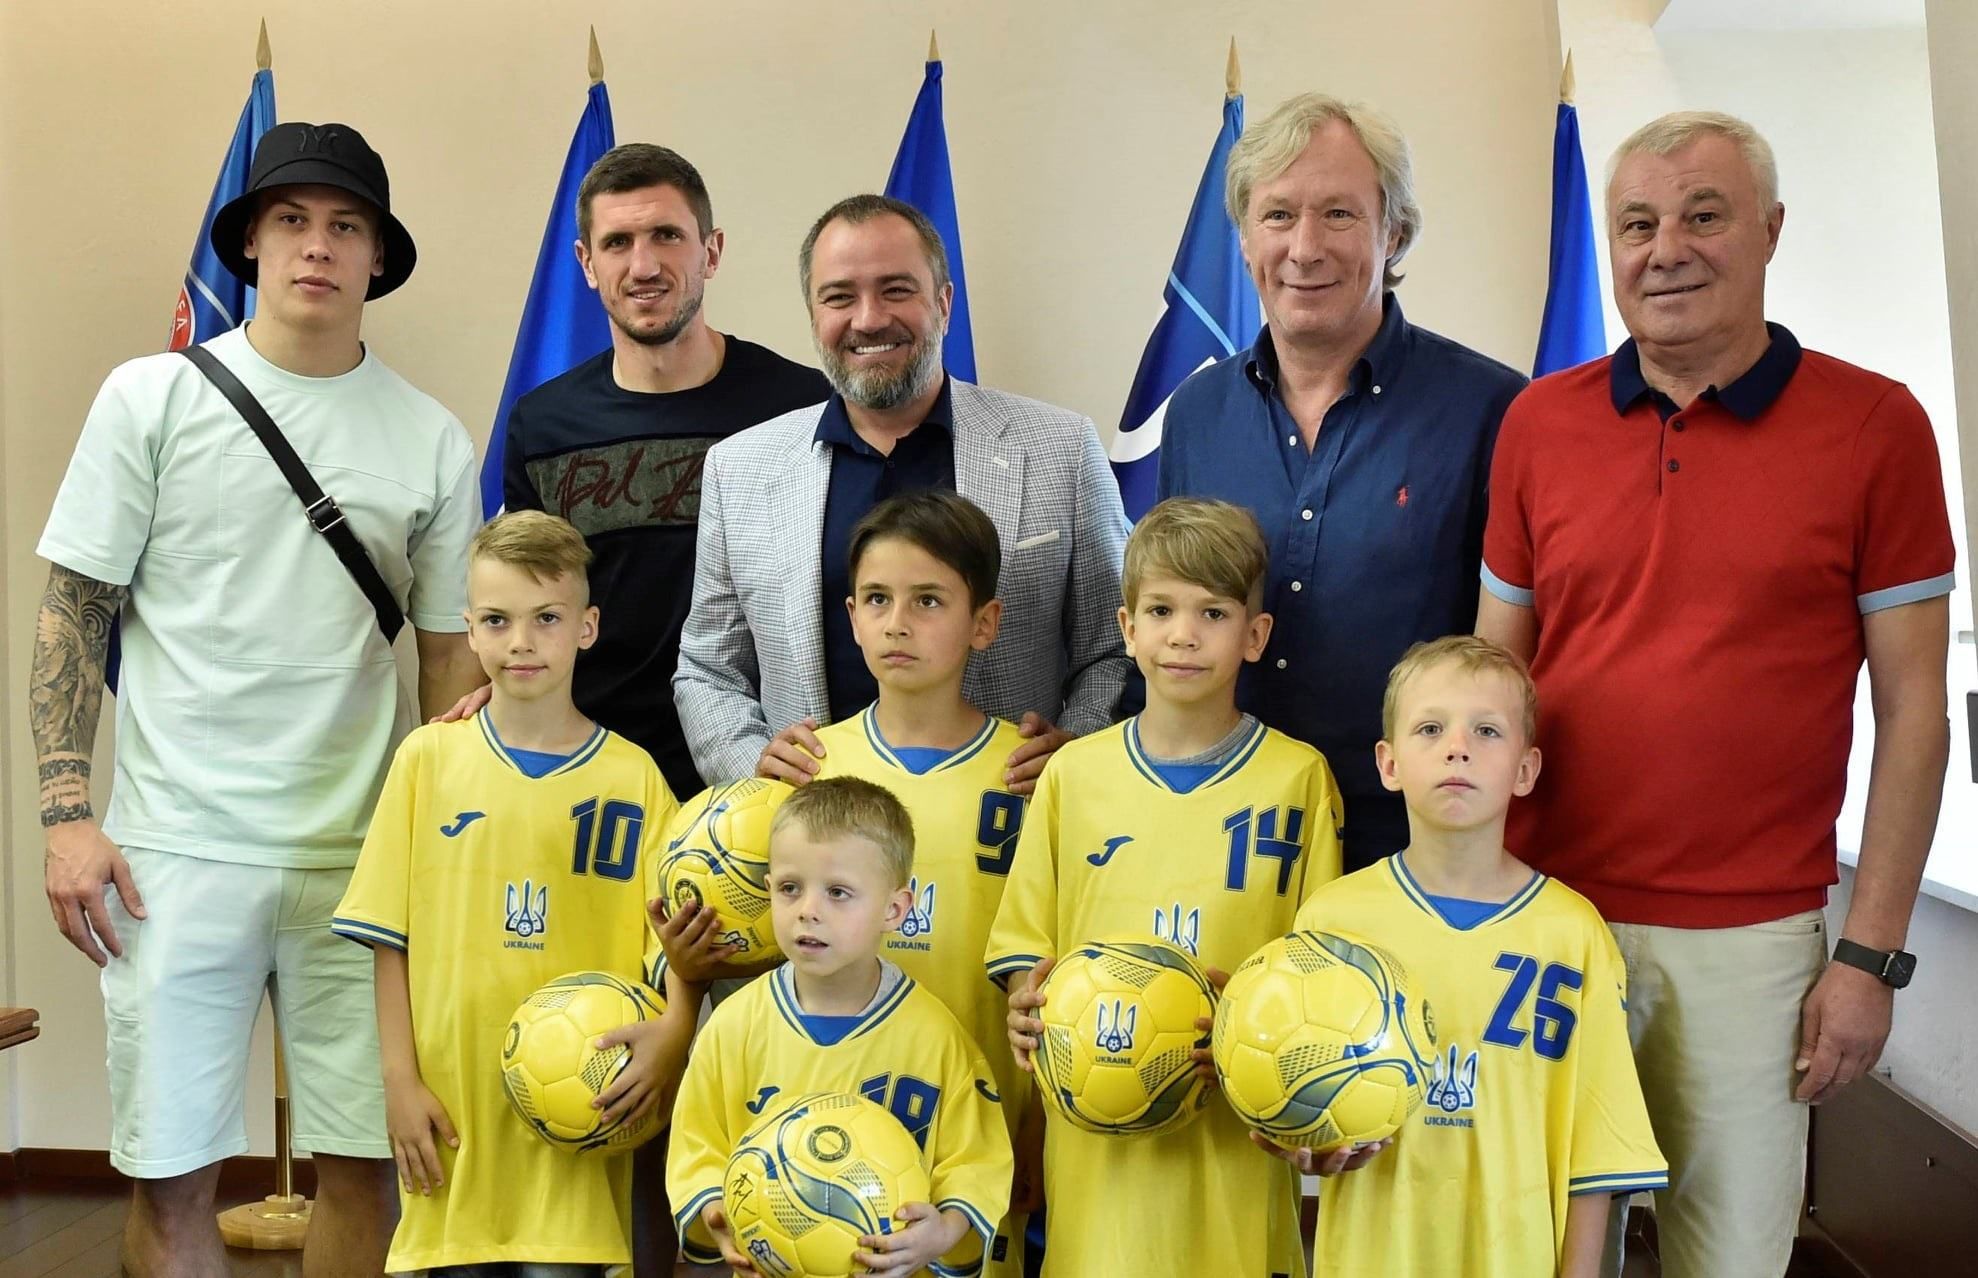 Встреча с кумирами – маленькие футболисты, исполнявшие гимн, получили награду: милое видео 